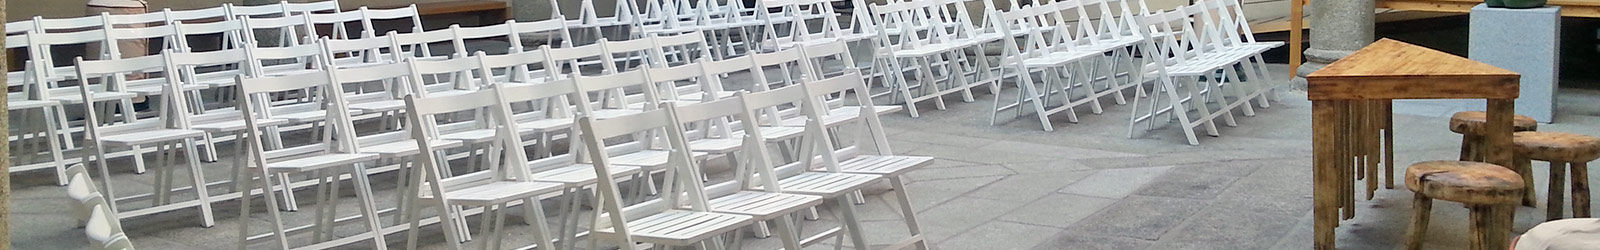 Liebana Events. Alquiler de sillas para eventos en Madrid.